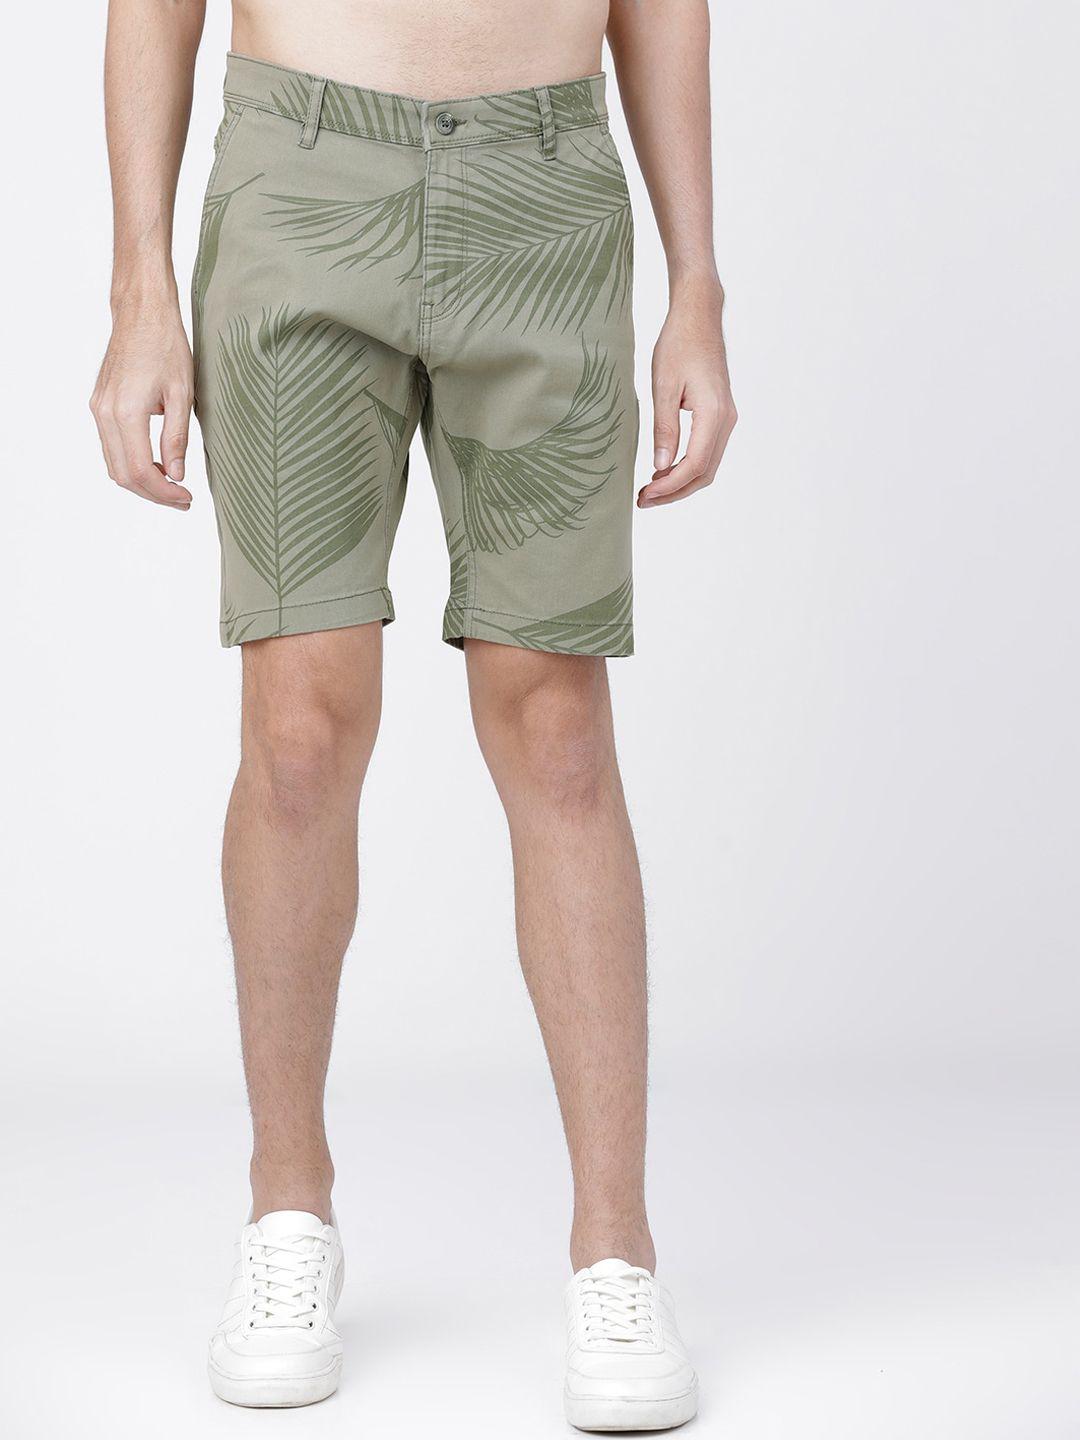 highlander men olive green printed slim fit regular shorts